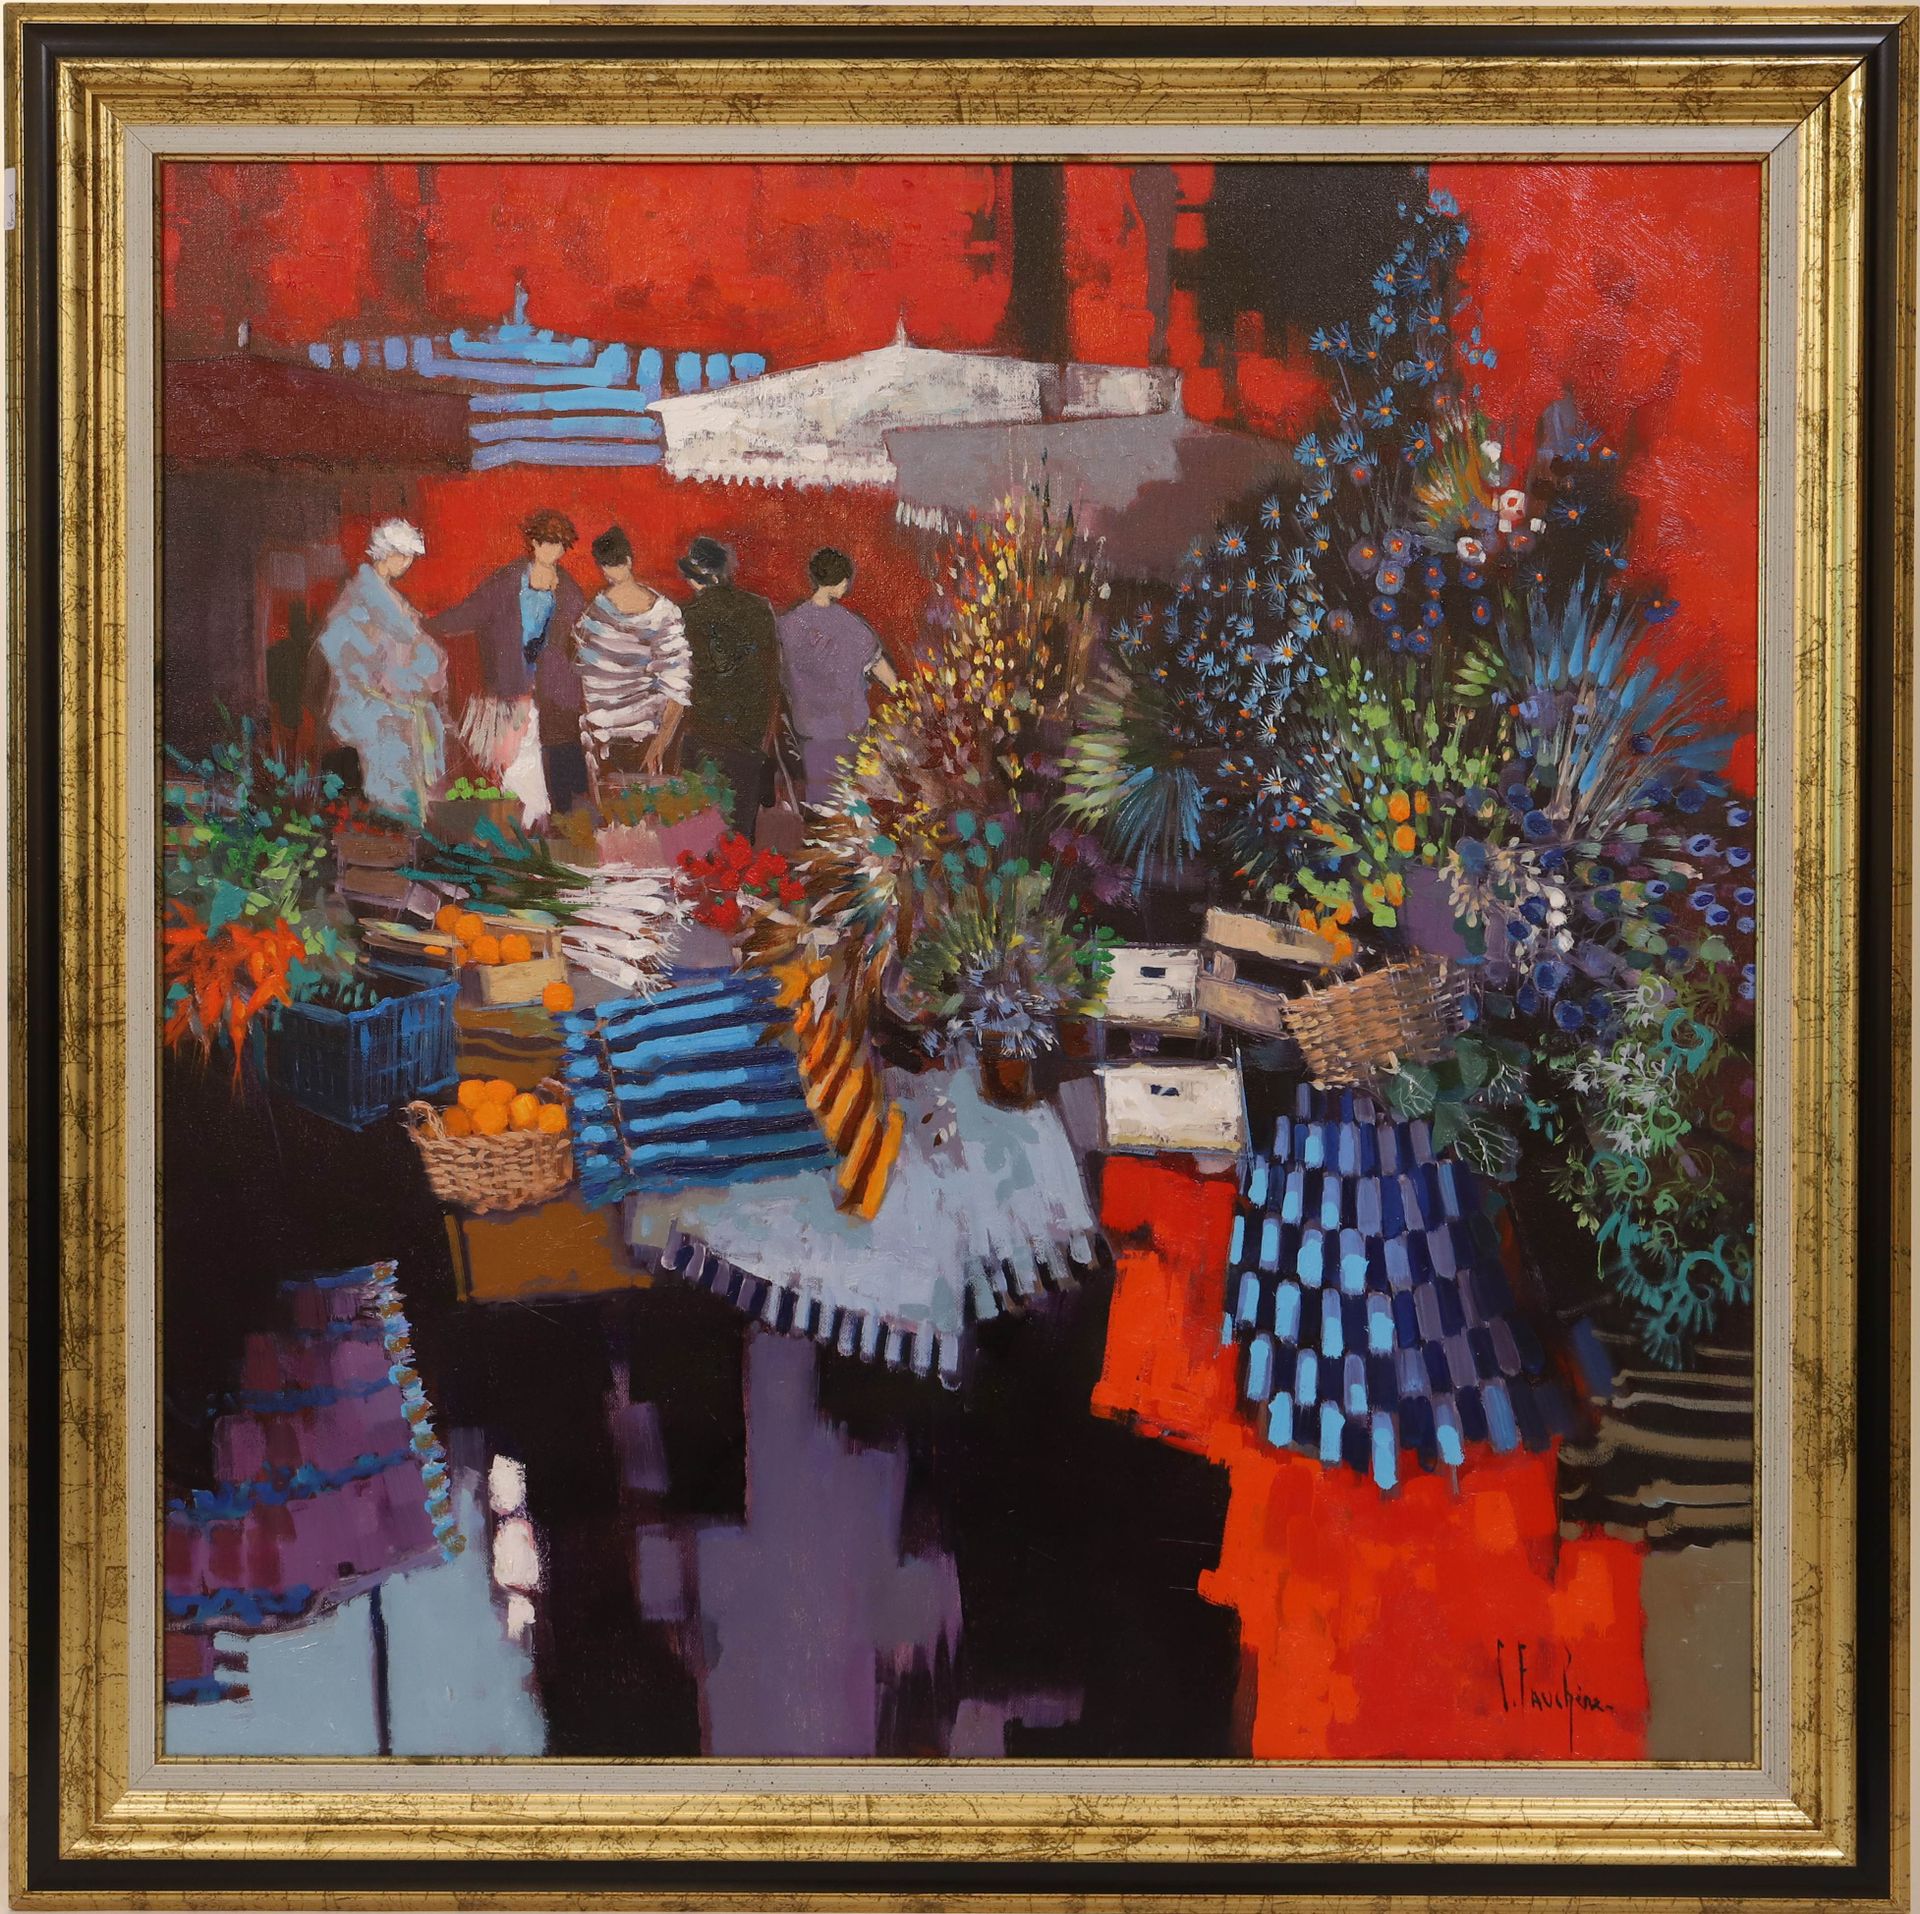 Null "El mercado" de Claude FAUCHERE (1936-2019)

Pintor francés

Óleo sobre lie&hellip;